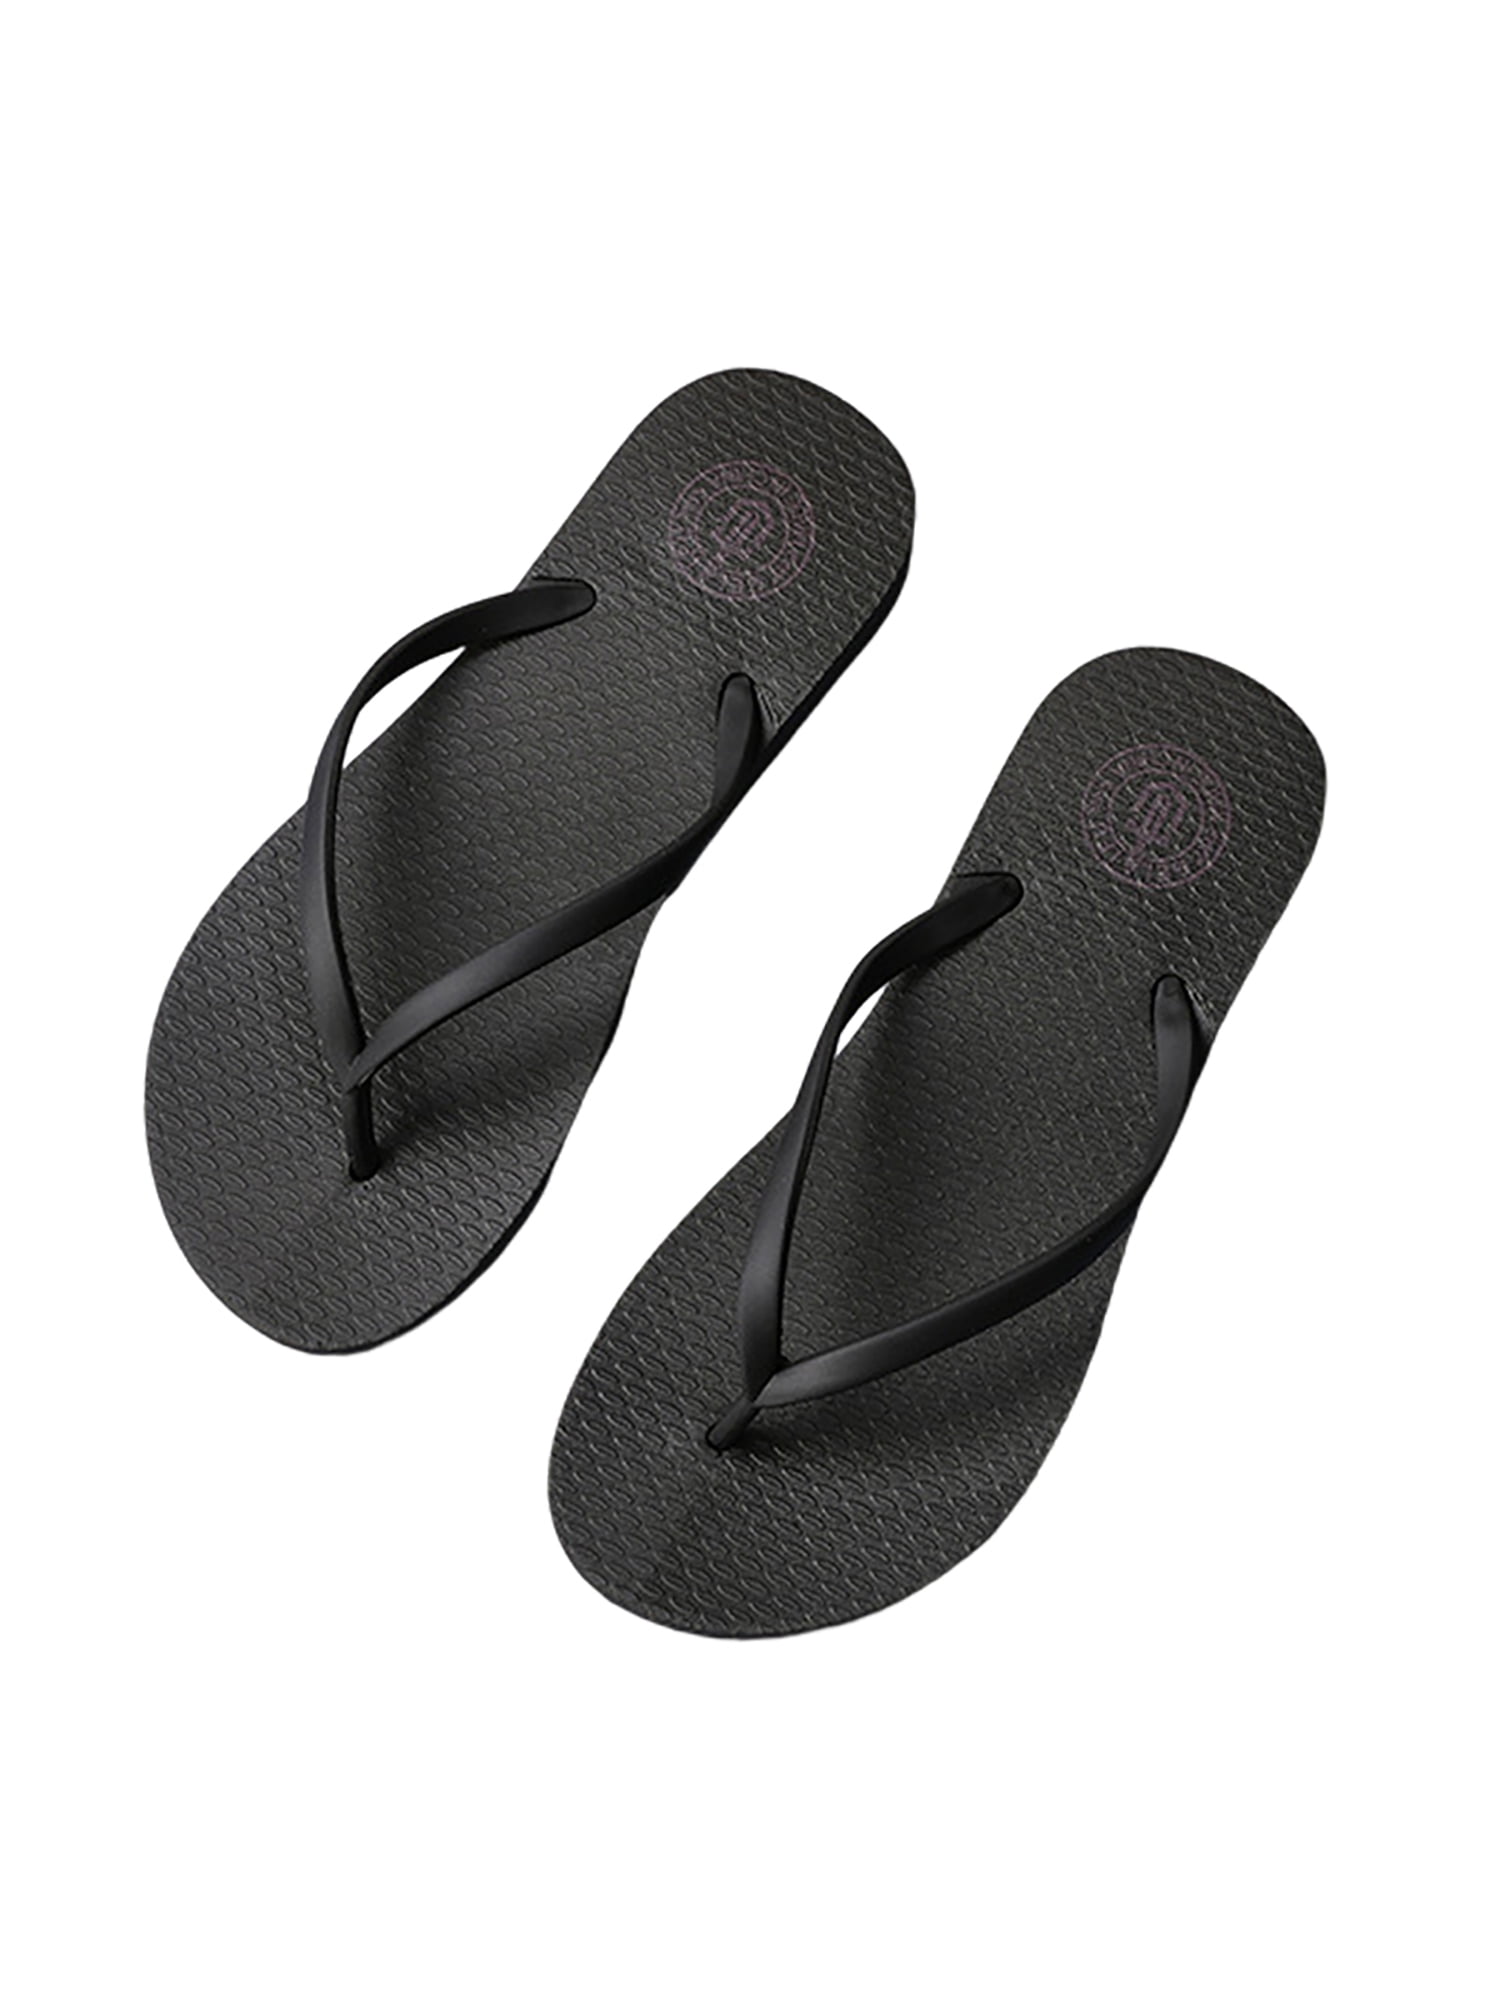 Crocowalk Ladies Thong Sandal Slip On Flat Sandals Summer Flip Flops ...